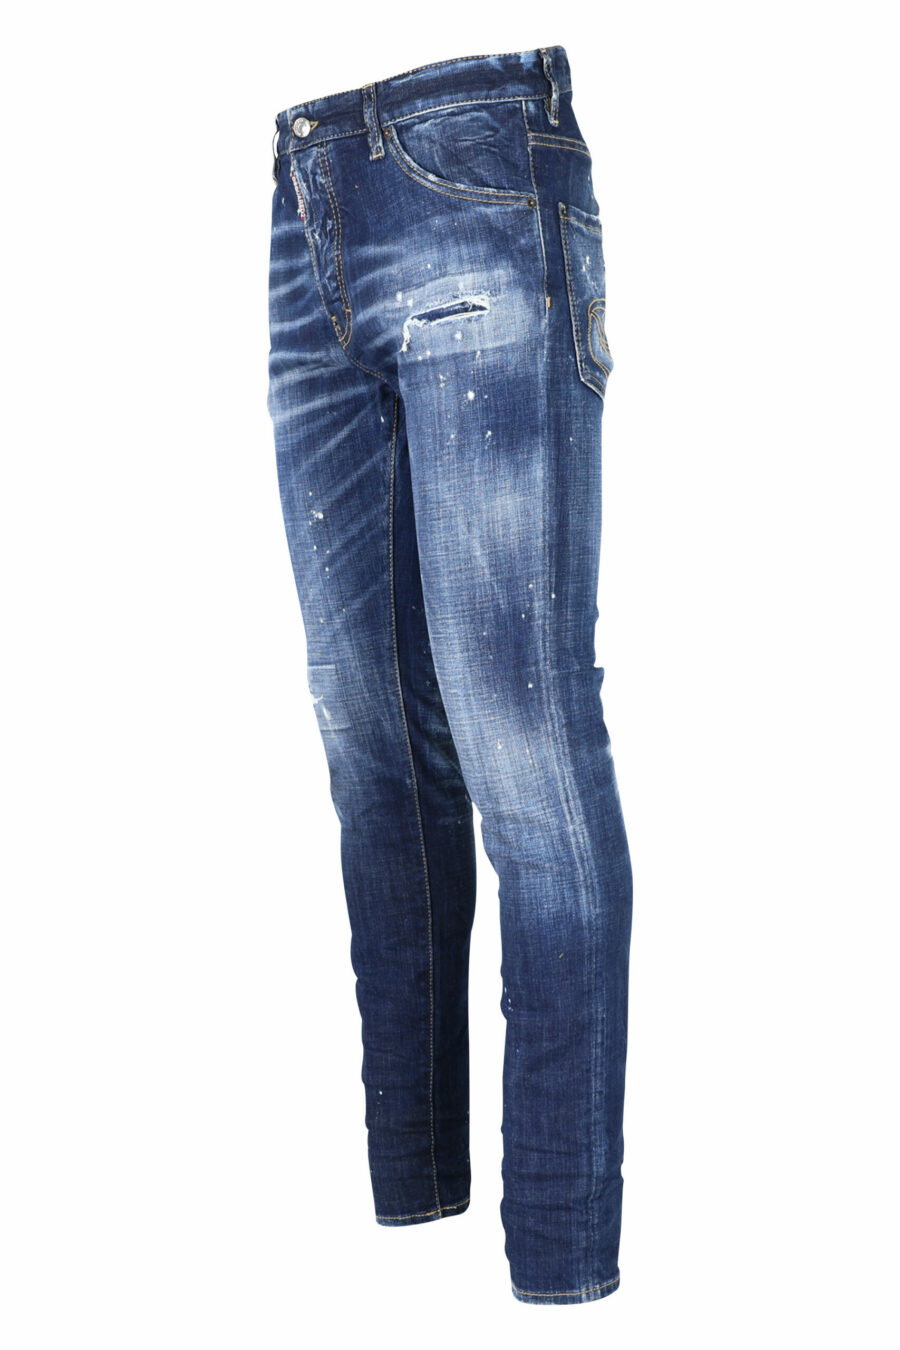 Blaue "cool guy jean" Jeans mit Farbe und ausgefranst - 8054148101688 1 skaliert